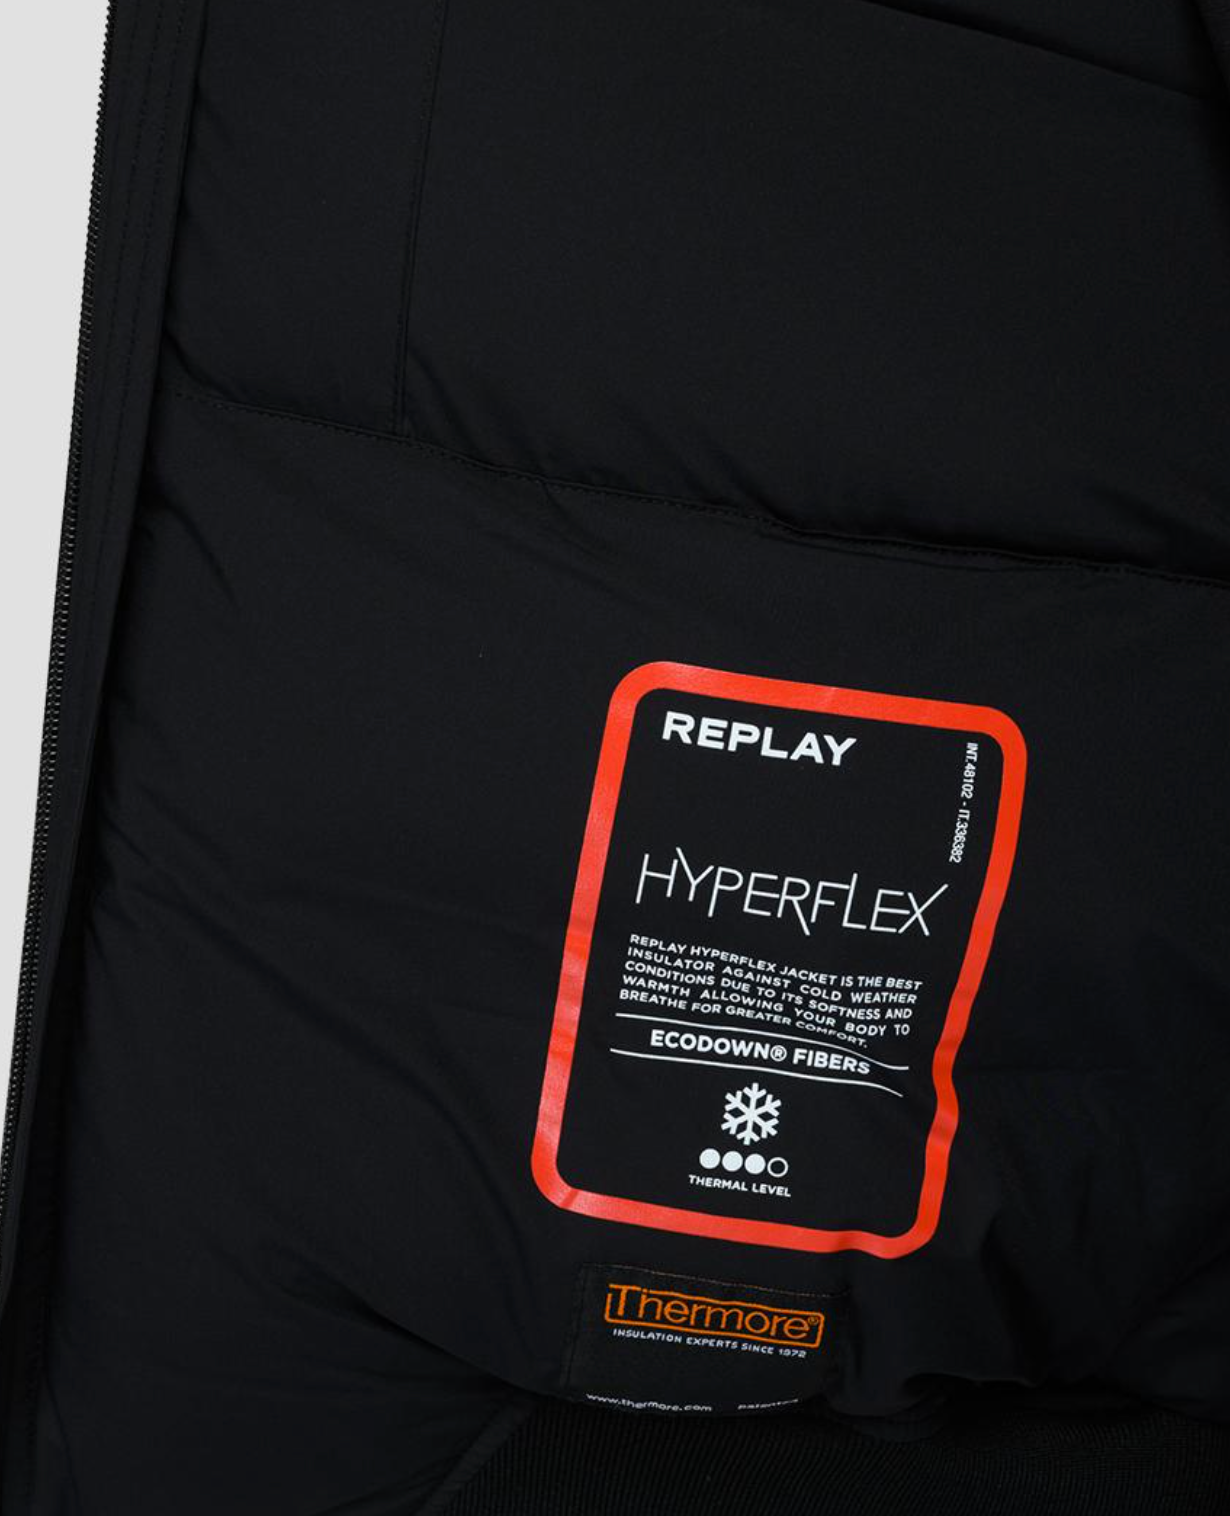 Replay "Hyperflex" Edition Jacket Black